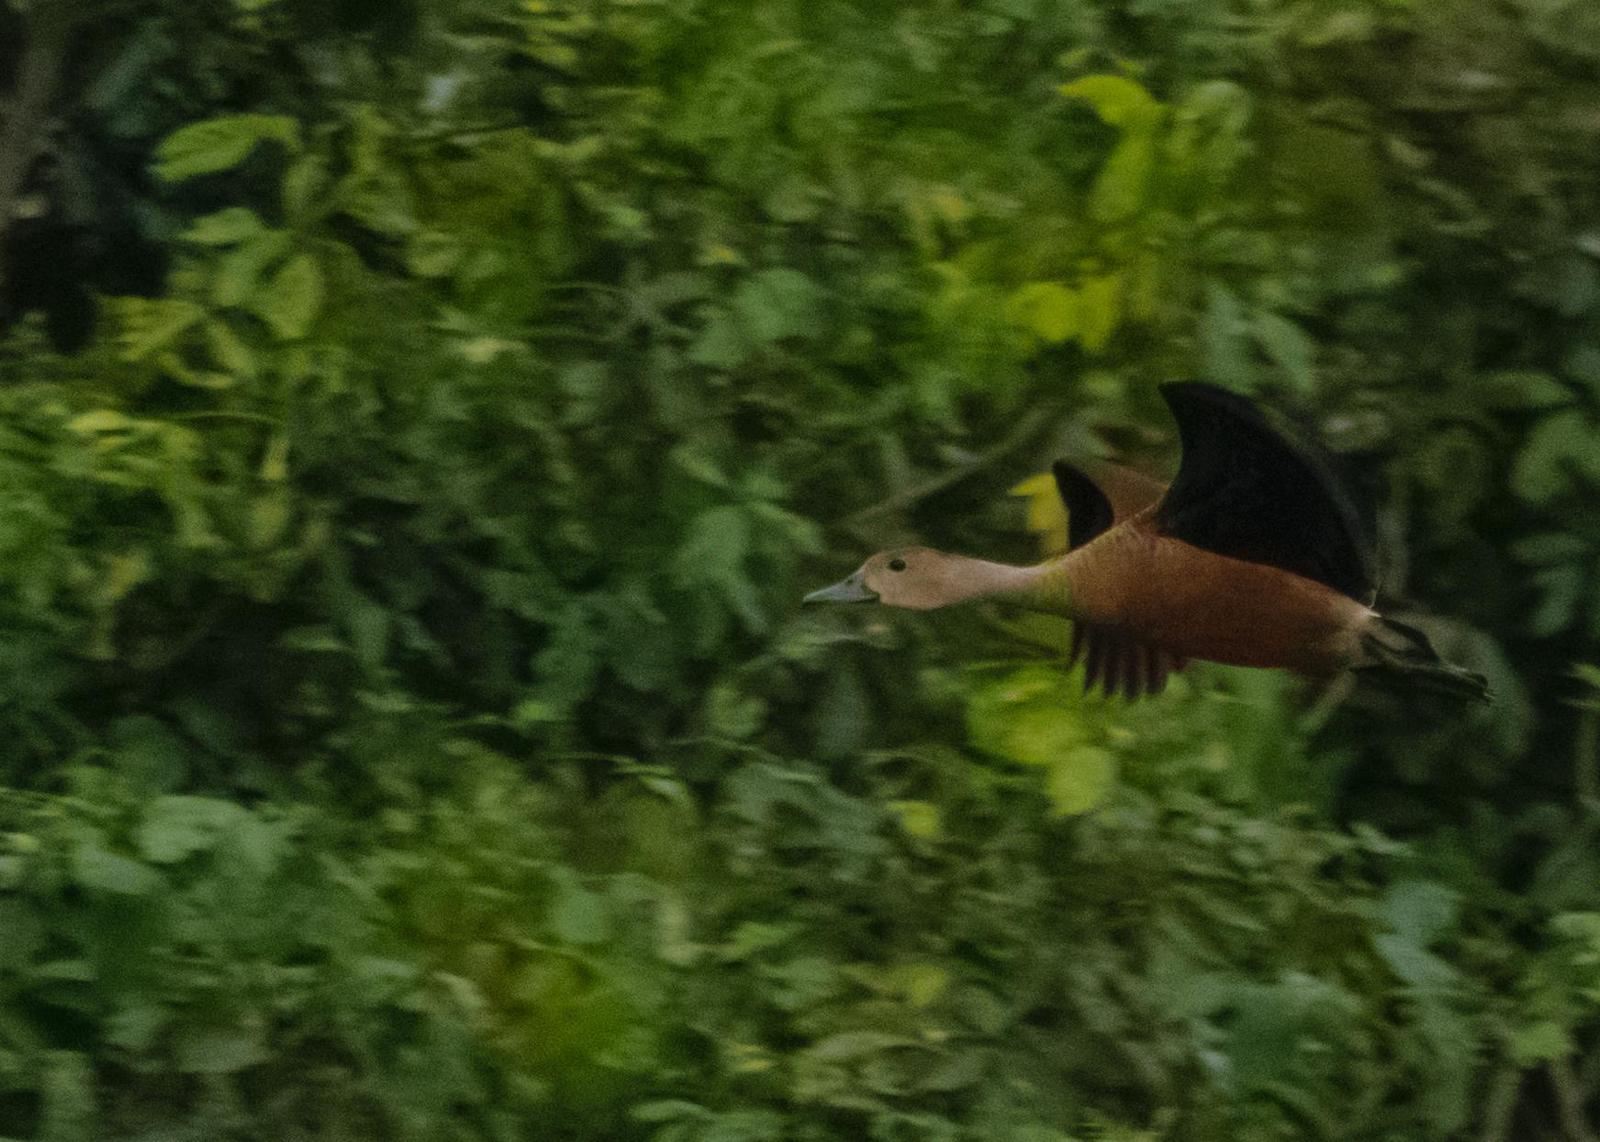 Lesser Whistling-Duck Photo by Keshava Mysore